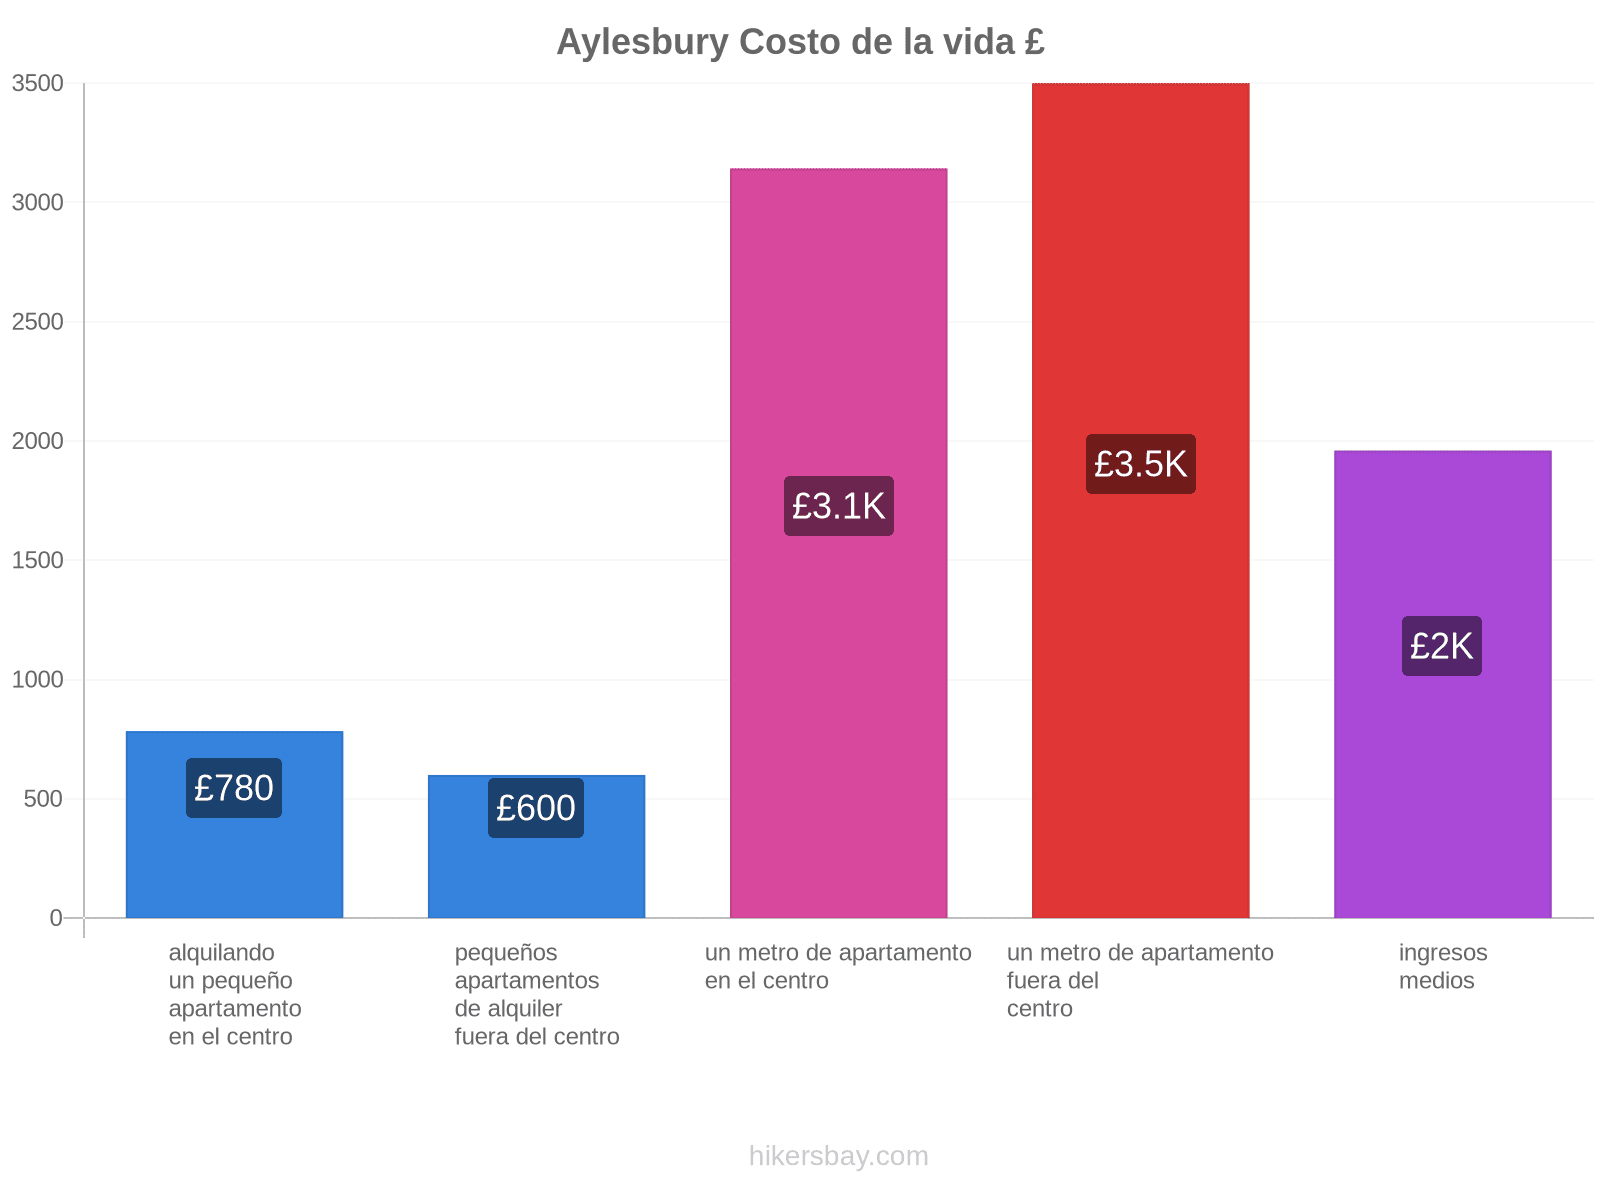 Aylesbury costo de la vida hikersbay.com